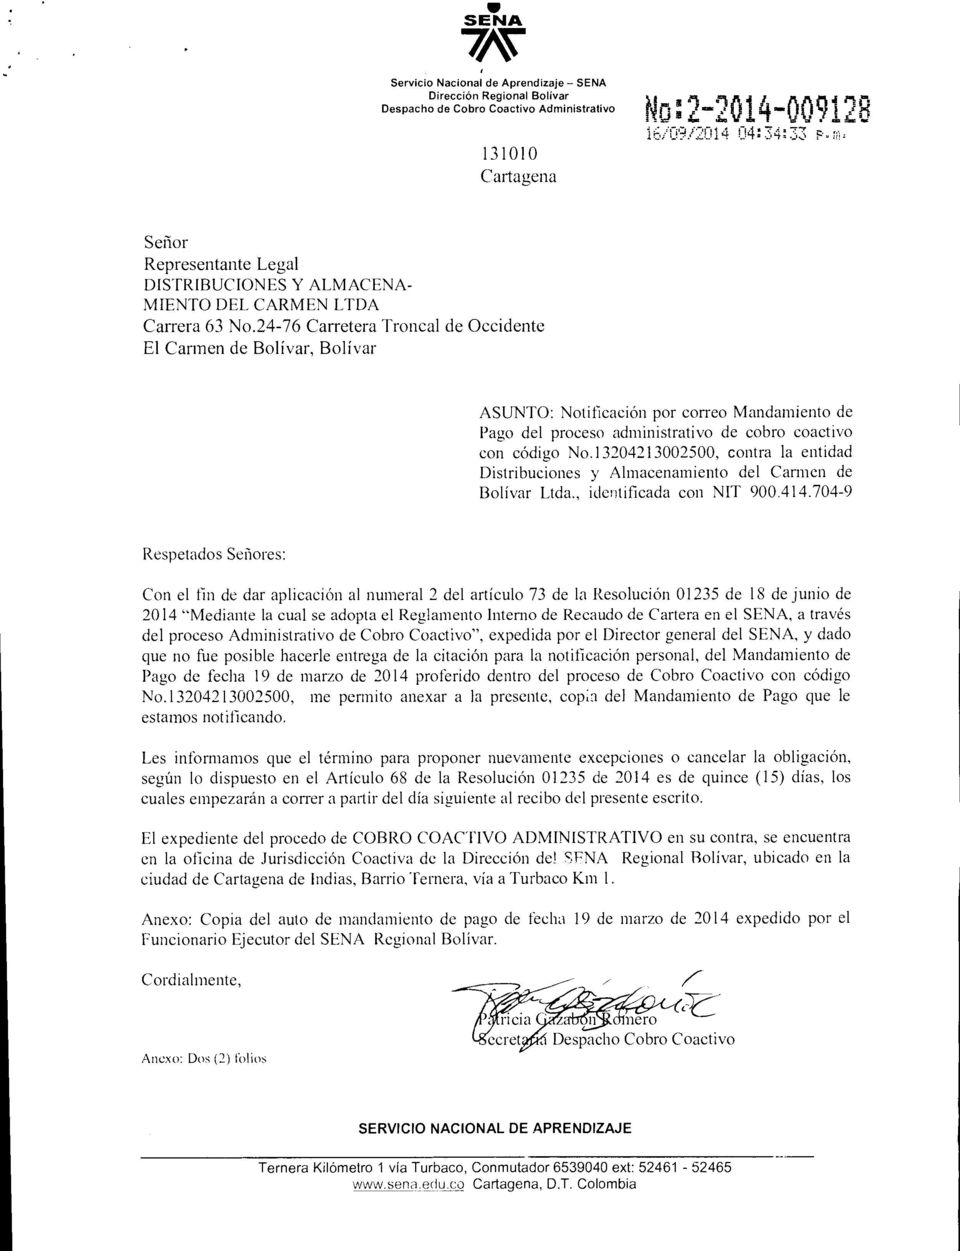 24-76 Carretera Troncal de Occidente El Carmen de Bolivar, Bolivar ASUNTO: Notificacion por correo Mandamiento de Pago del proceso administrativo de cobro coactivo con codigo No.